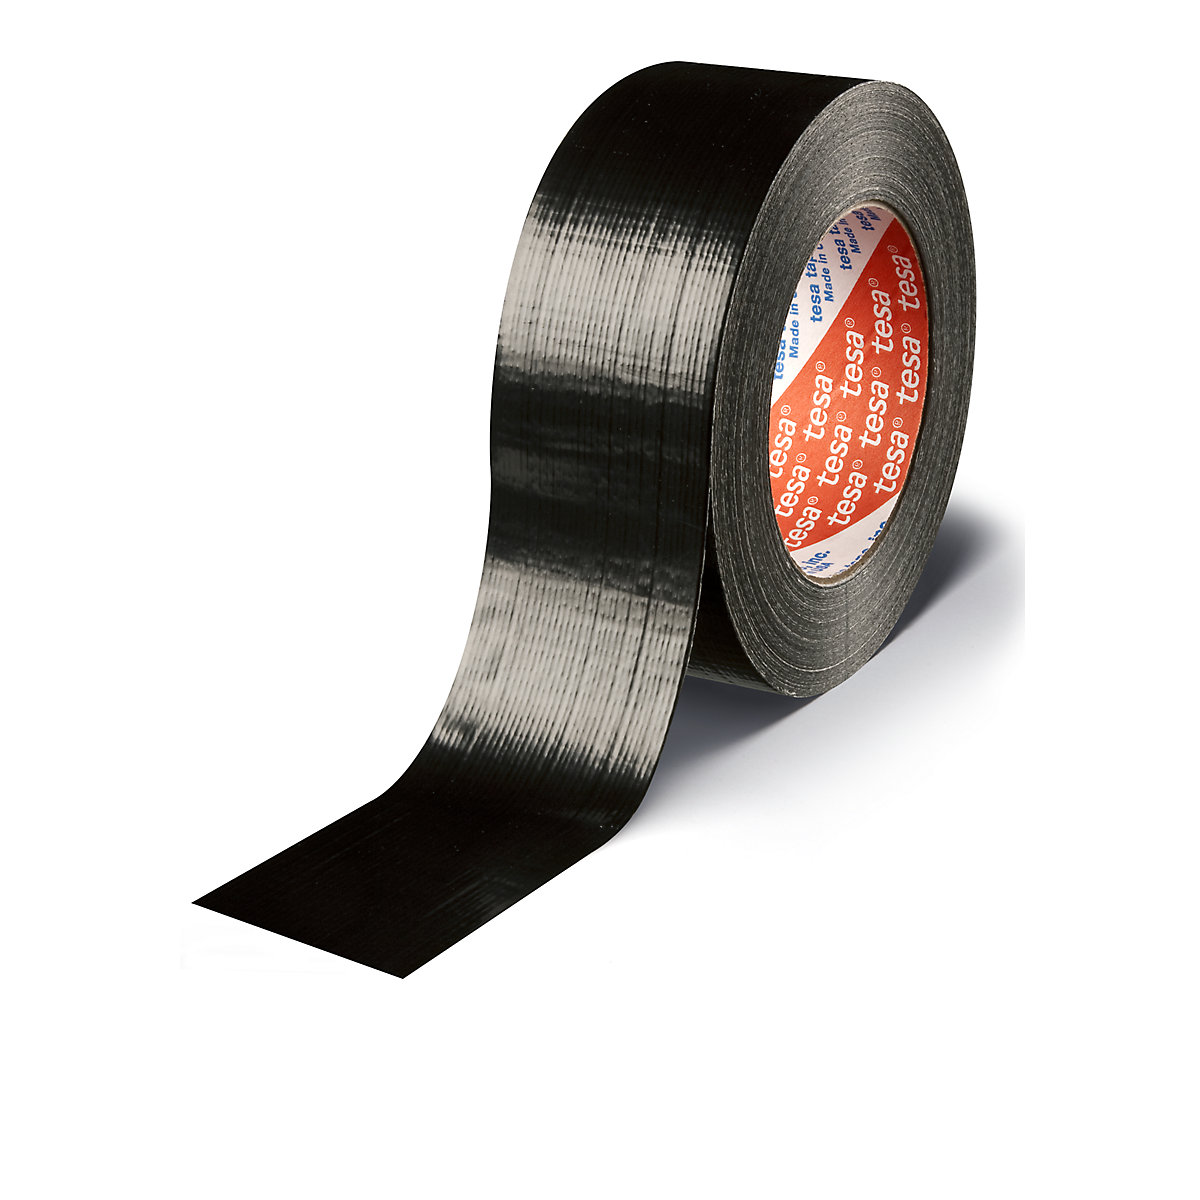 Tkaninová páska – tesa, tkaninová páska tesa® 4613 Standard, bal.j. 24 rolí, černá, šířka pásky 48 mm-2